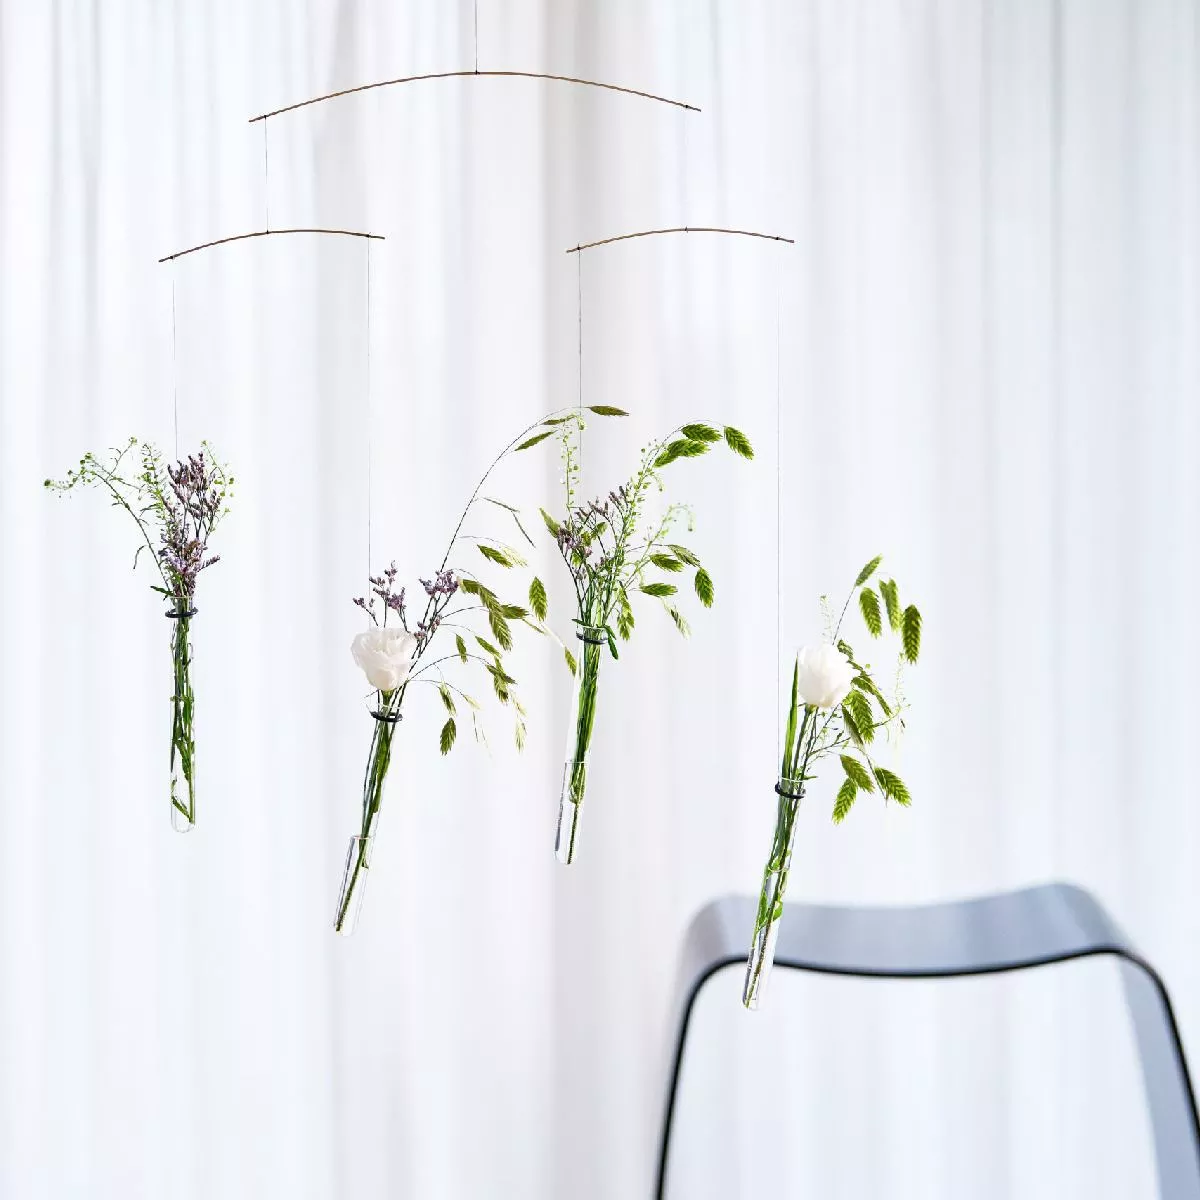 Blumen-Mobile "Flying Flowers" mit kleinen Glasvasen (60 x 40 cm)